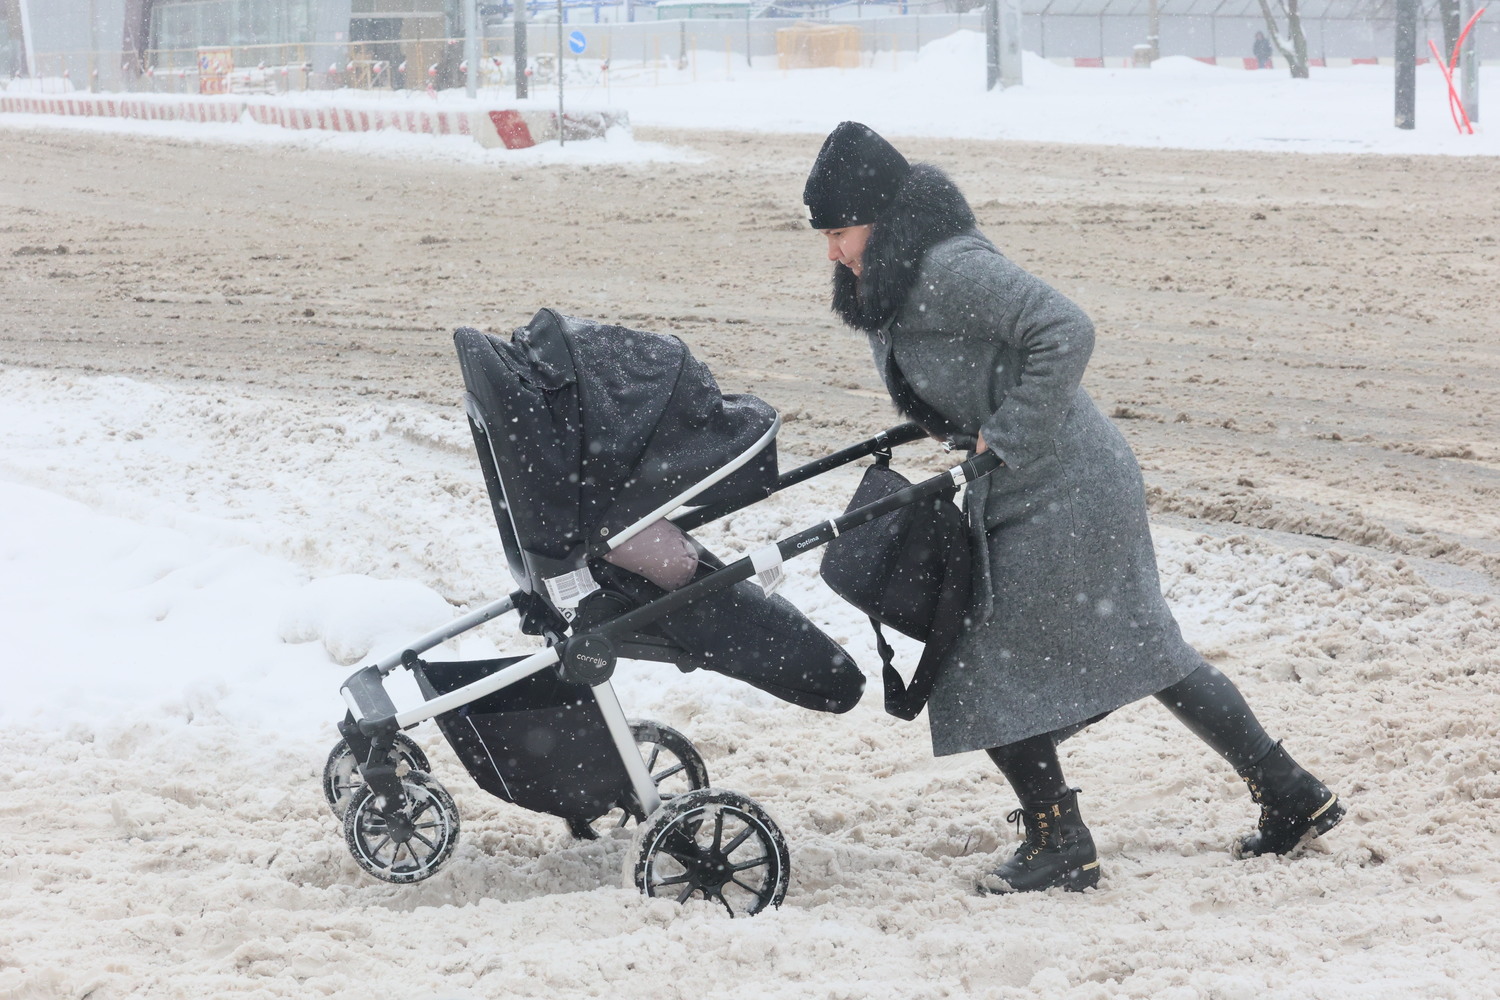  Из-за снегопада Москву парализовало восьмибалльными пробками: кадры заваленной столицы